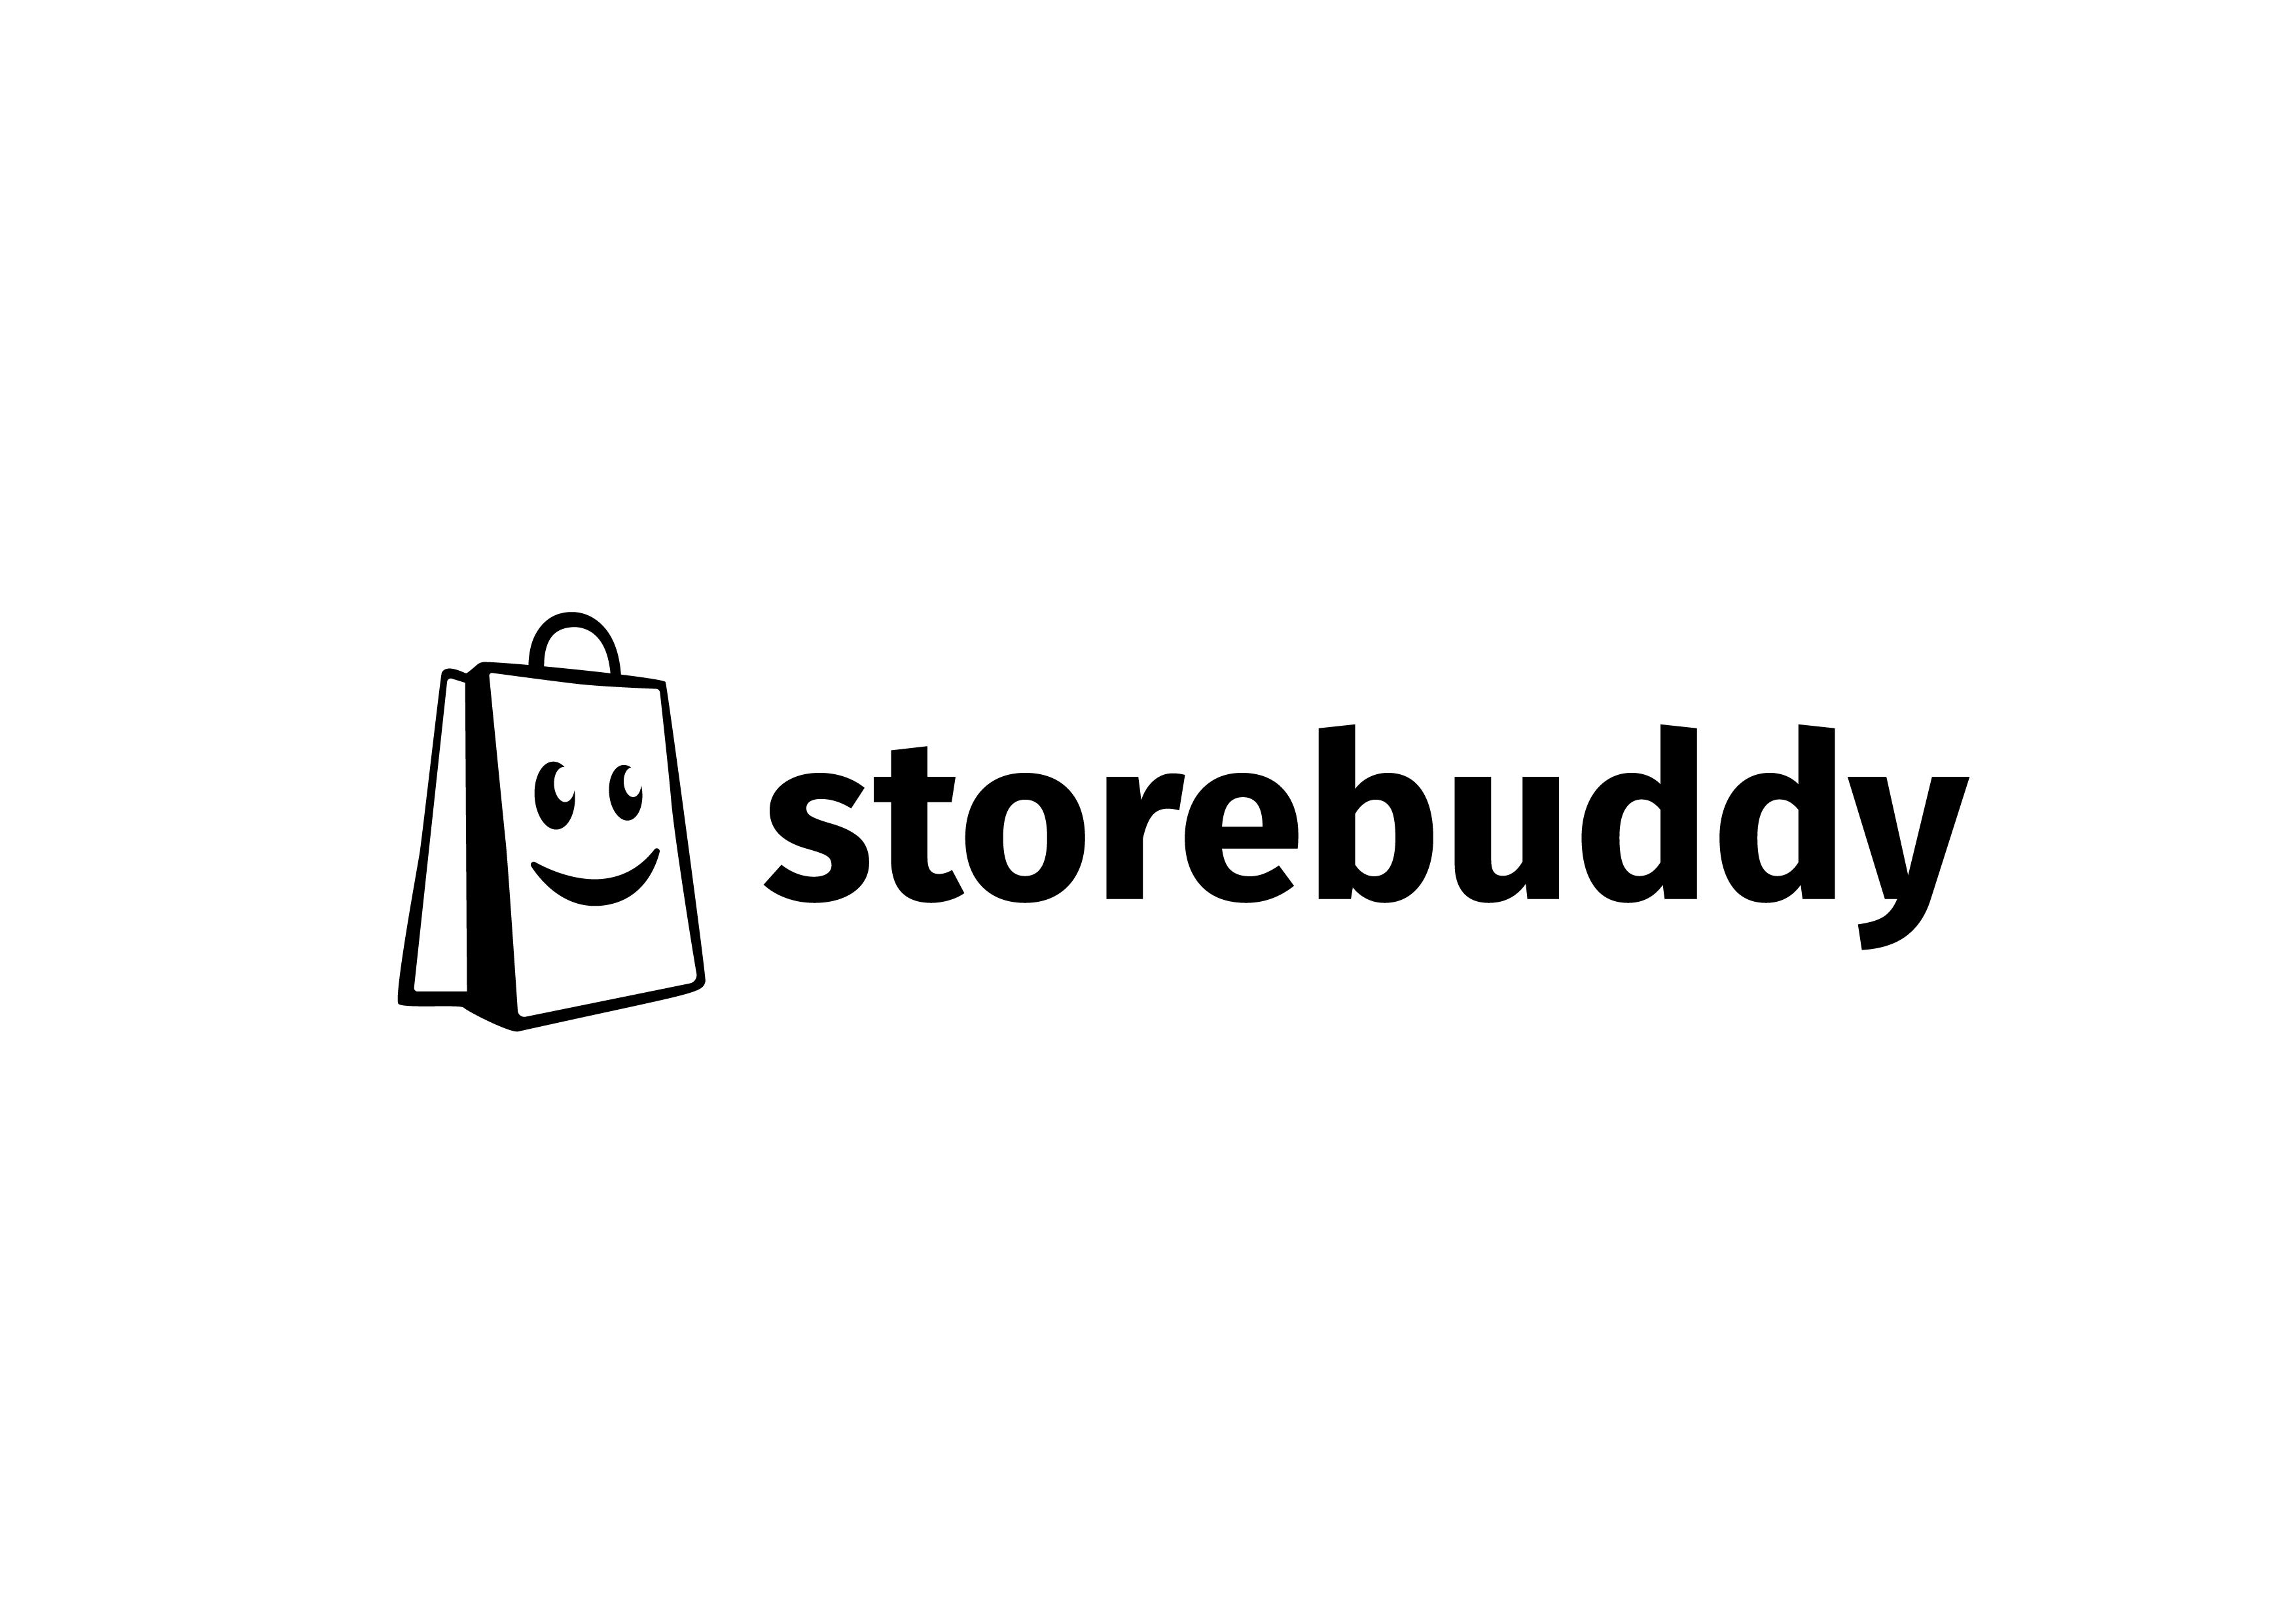 Storebuddy logo